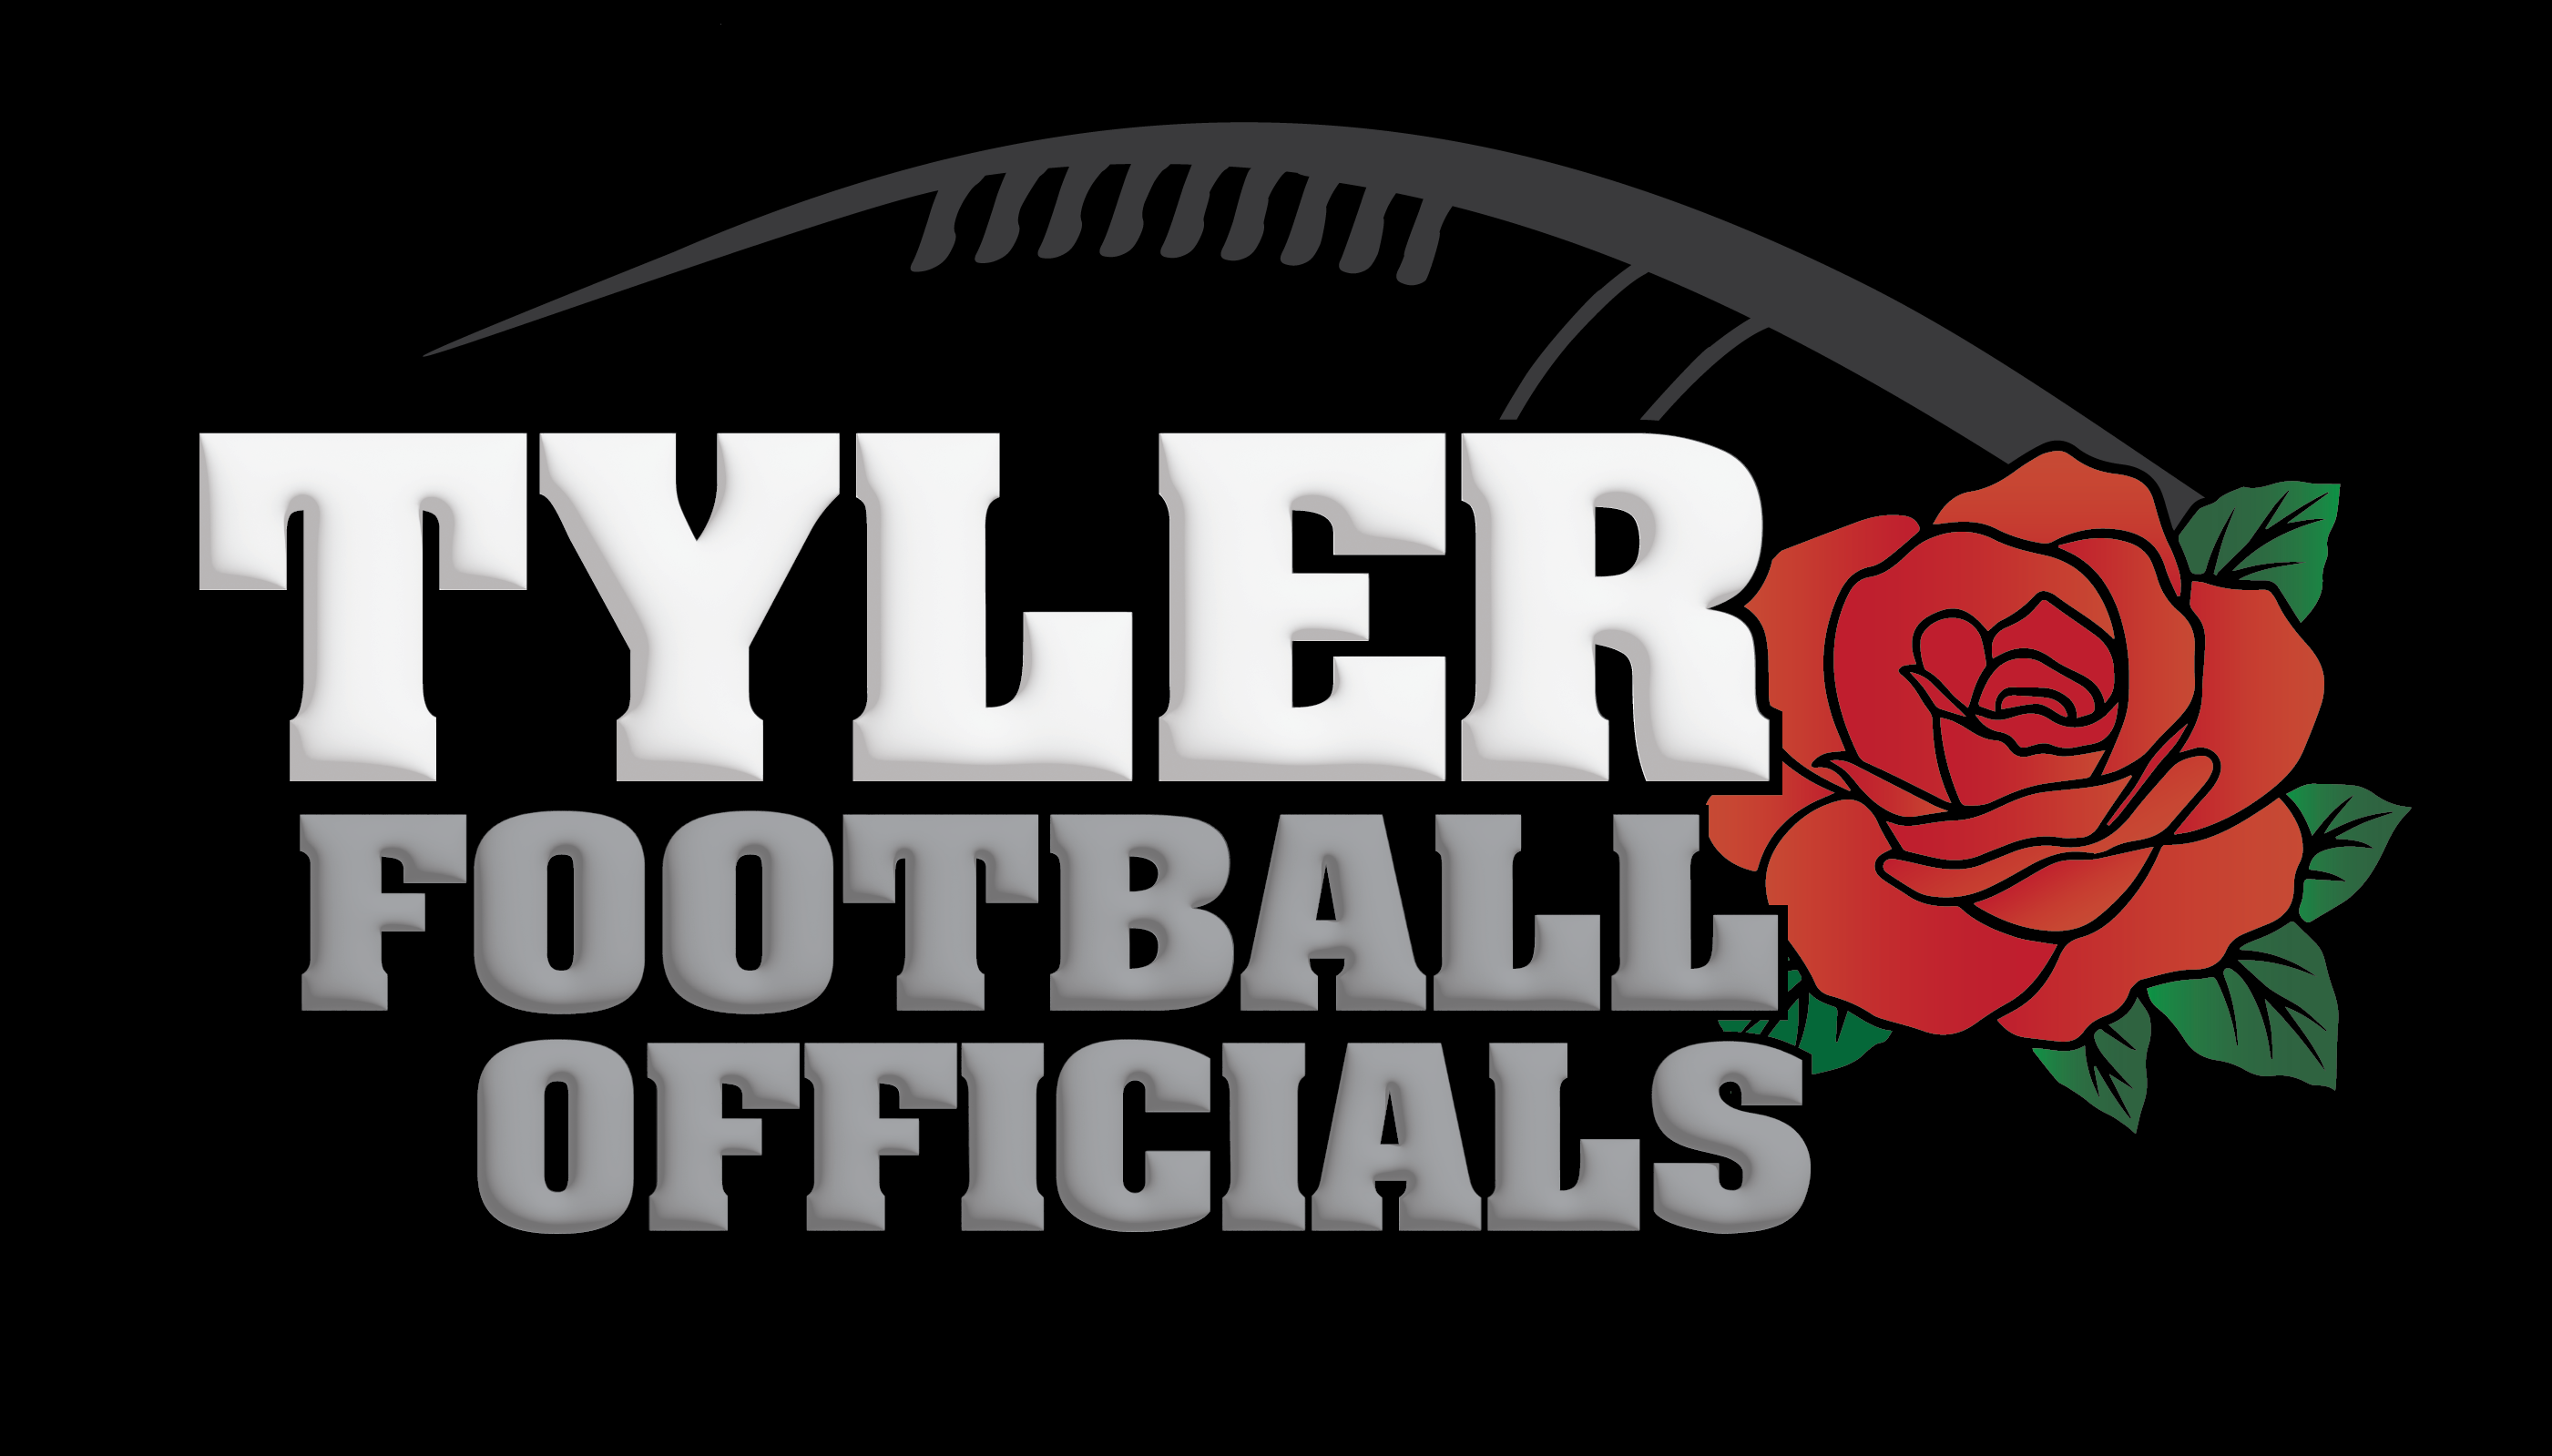 Tyler Football Officials Logo